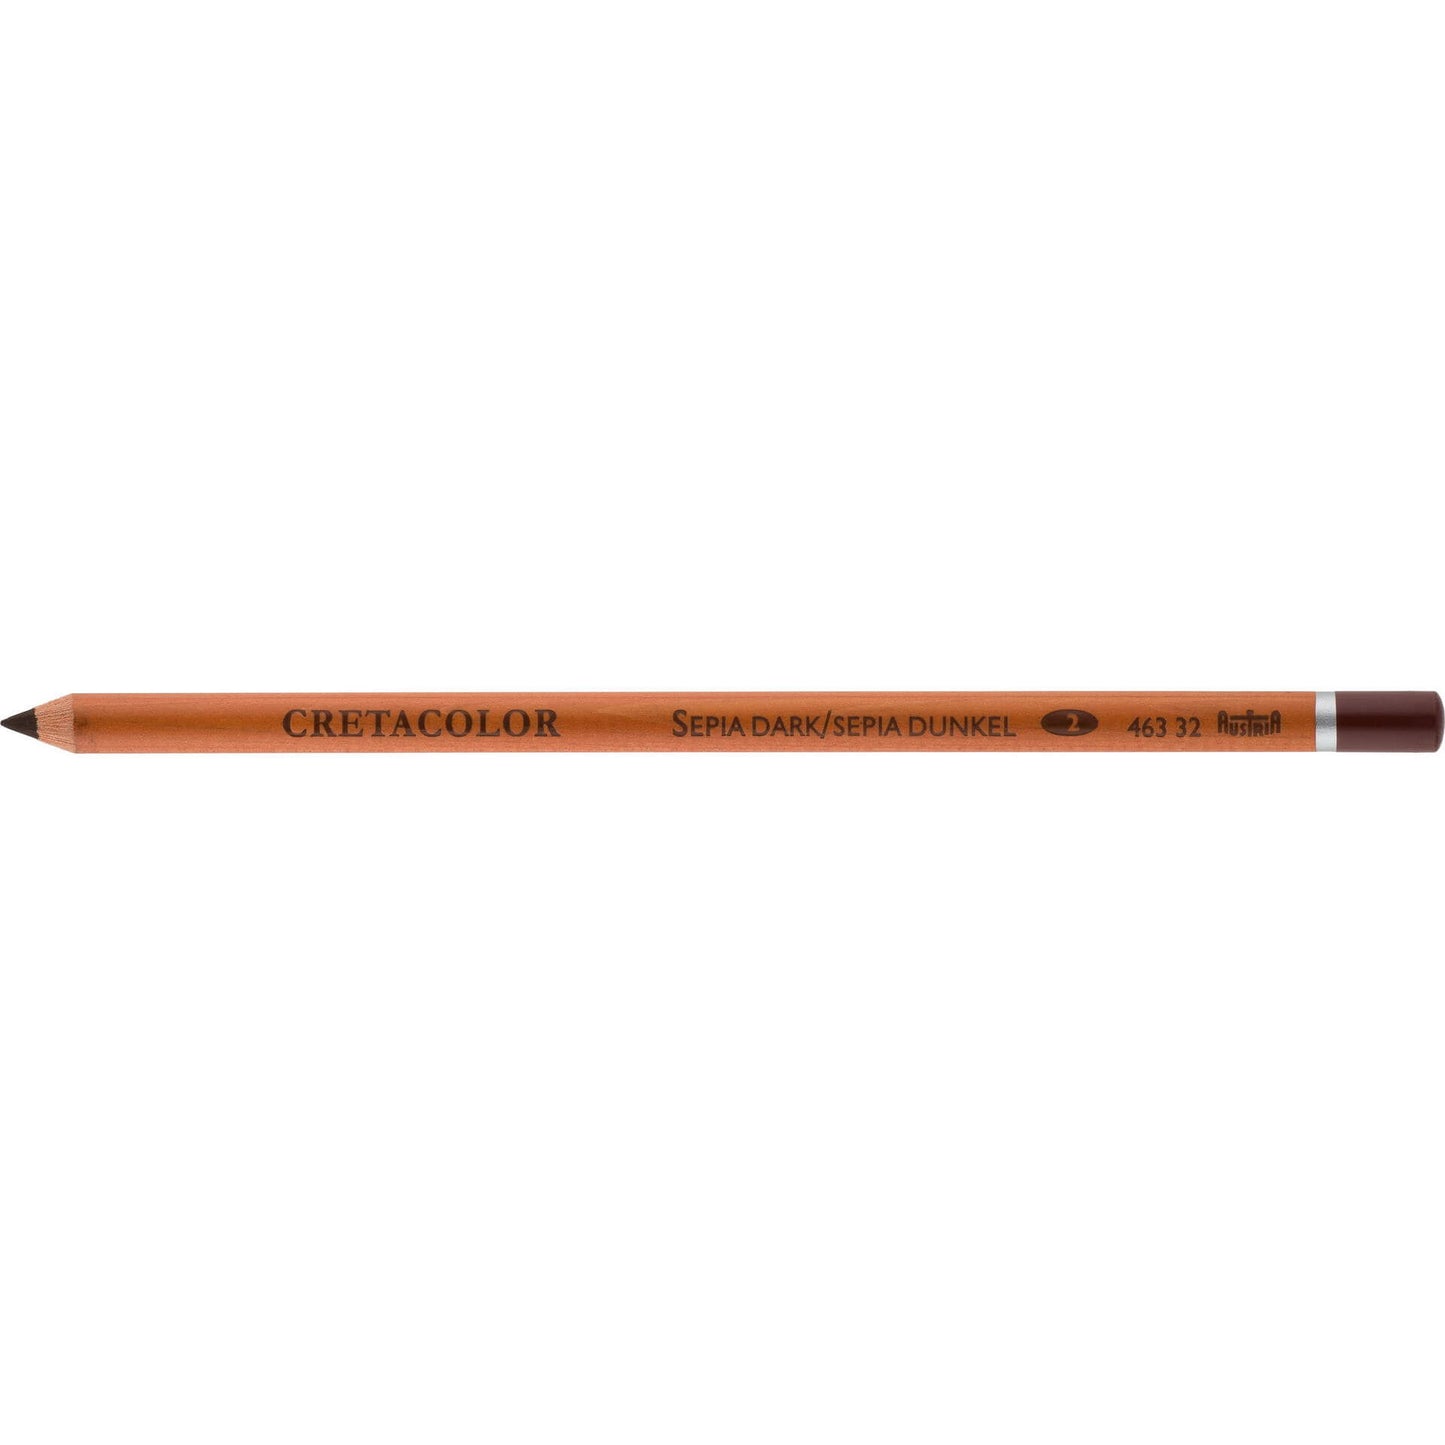 Cretacolor Drawing Pencils